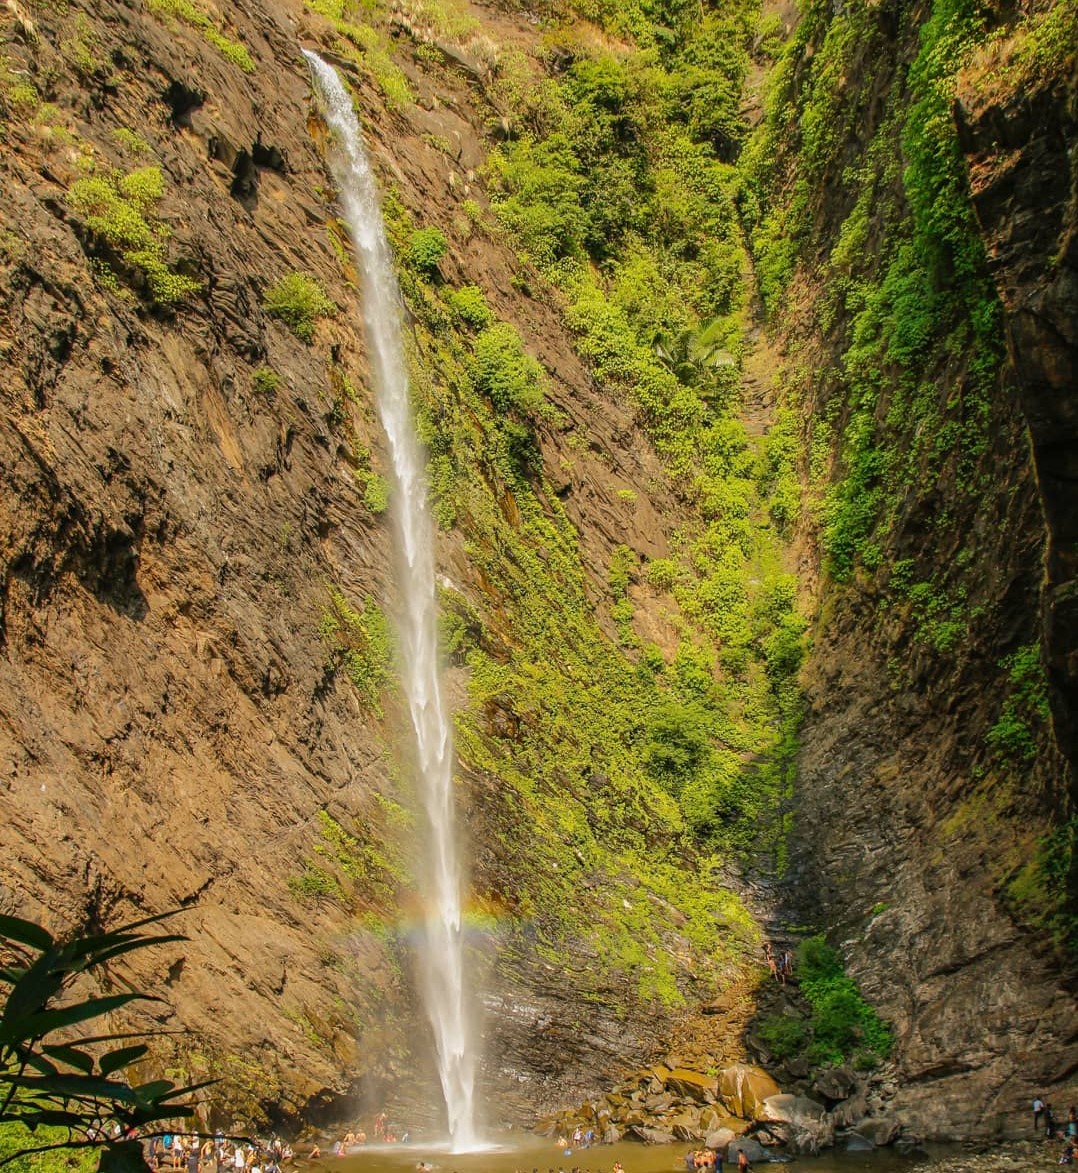 Koodlu Theertha Falls near Hanumana Gundi Falls